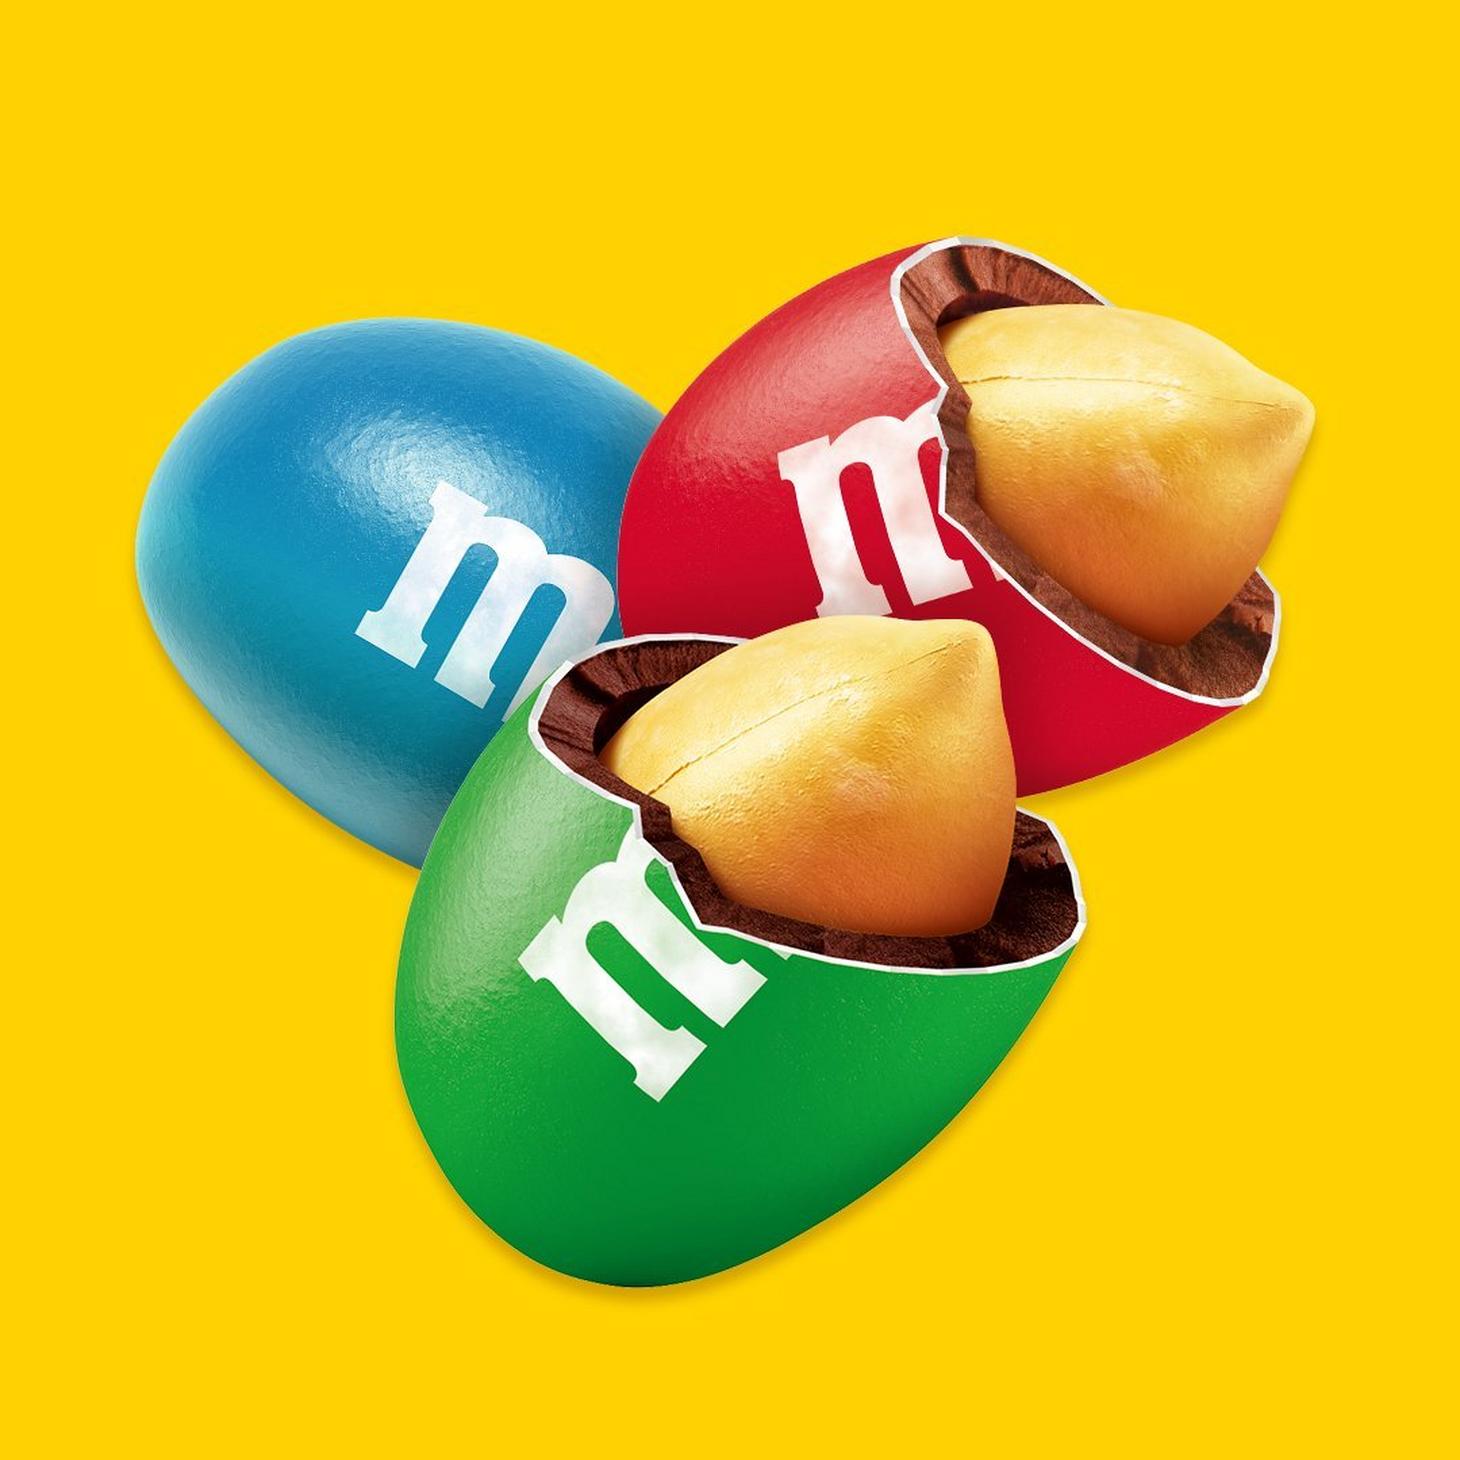 M&M’S Peanut in rood, blauw en groen